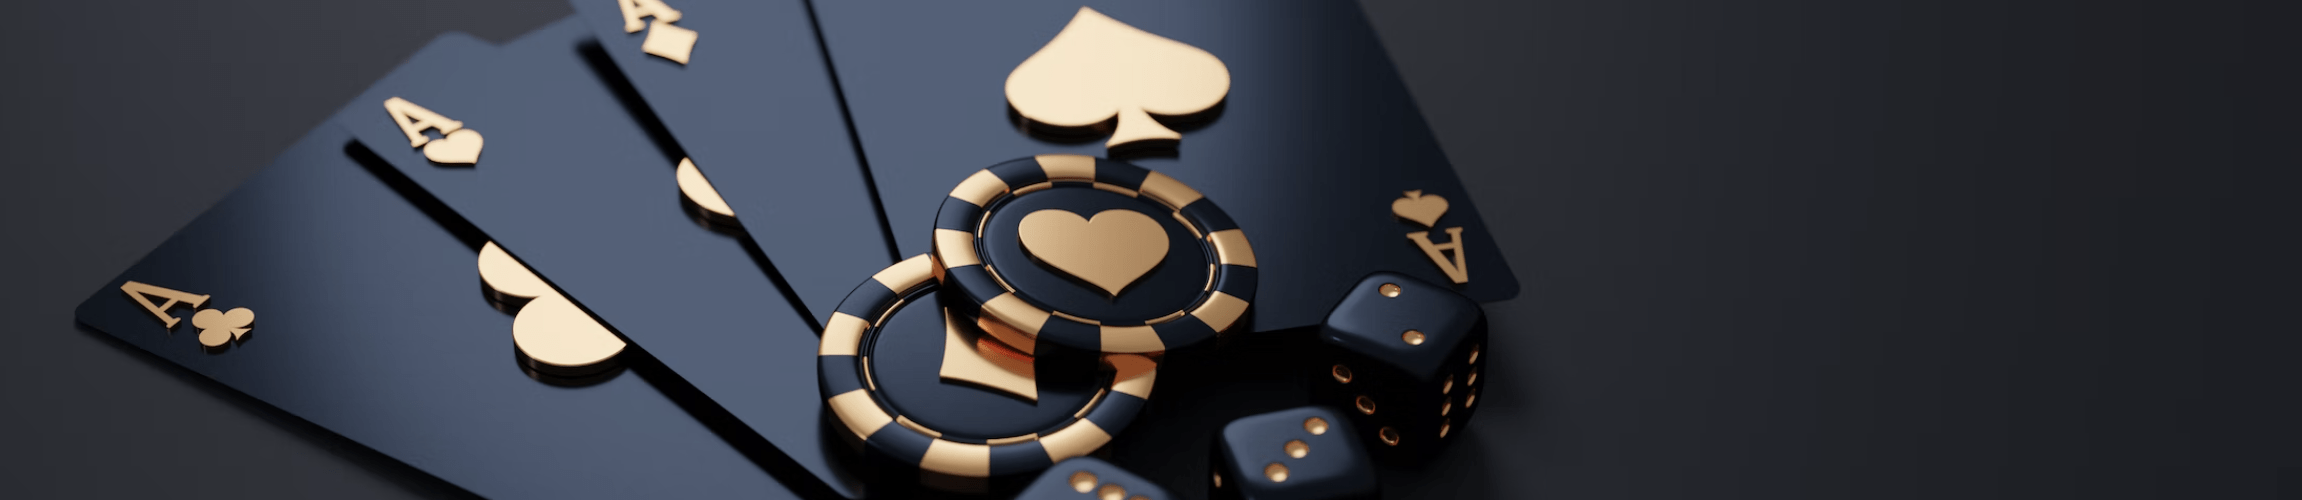 jackpot-clic-casino